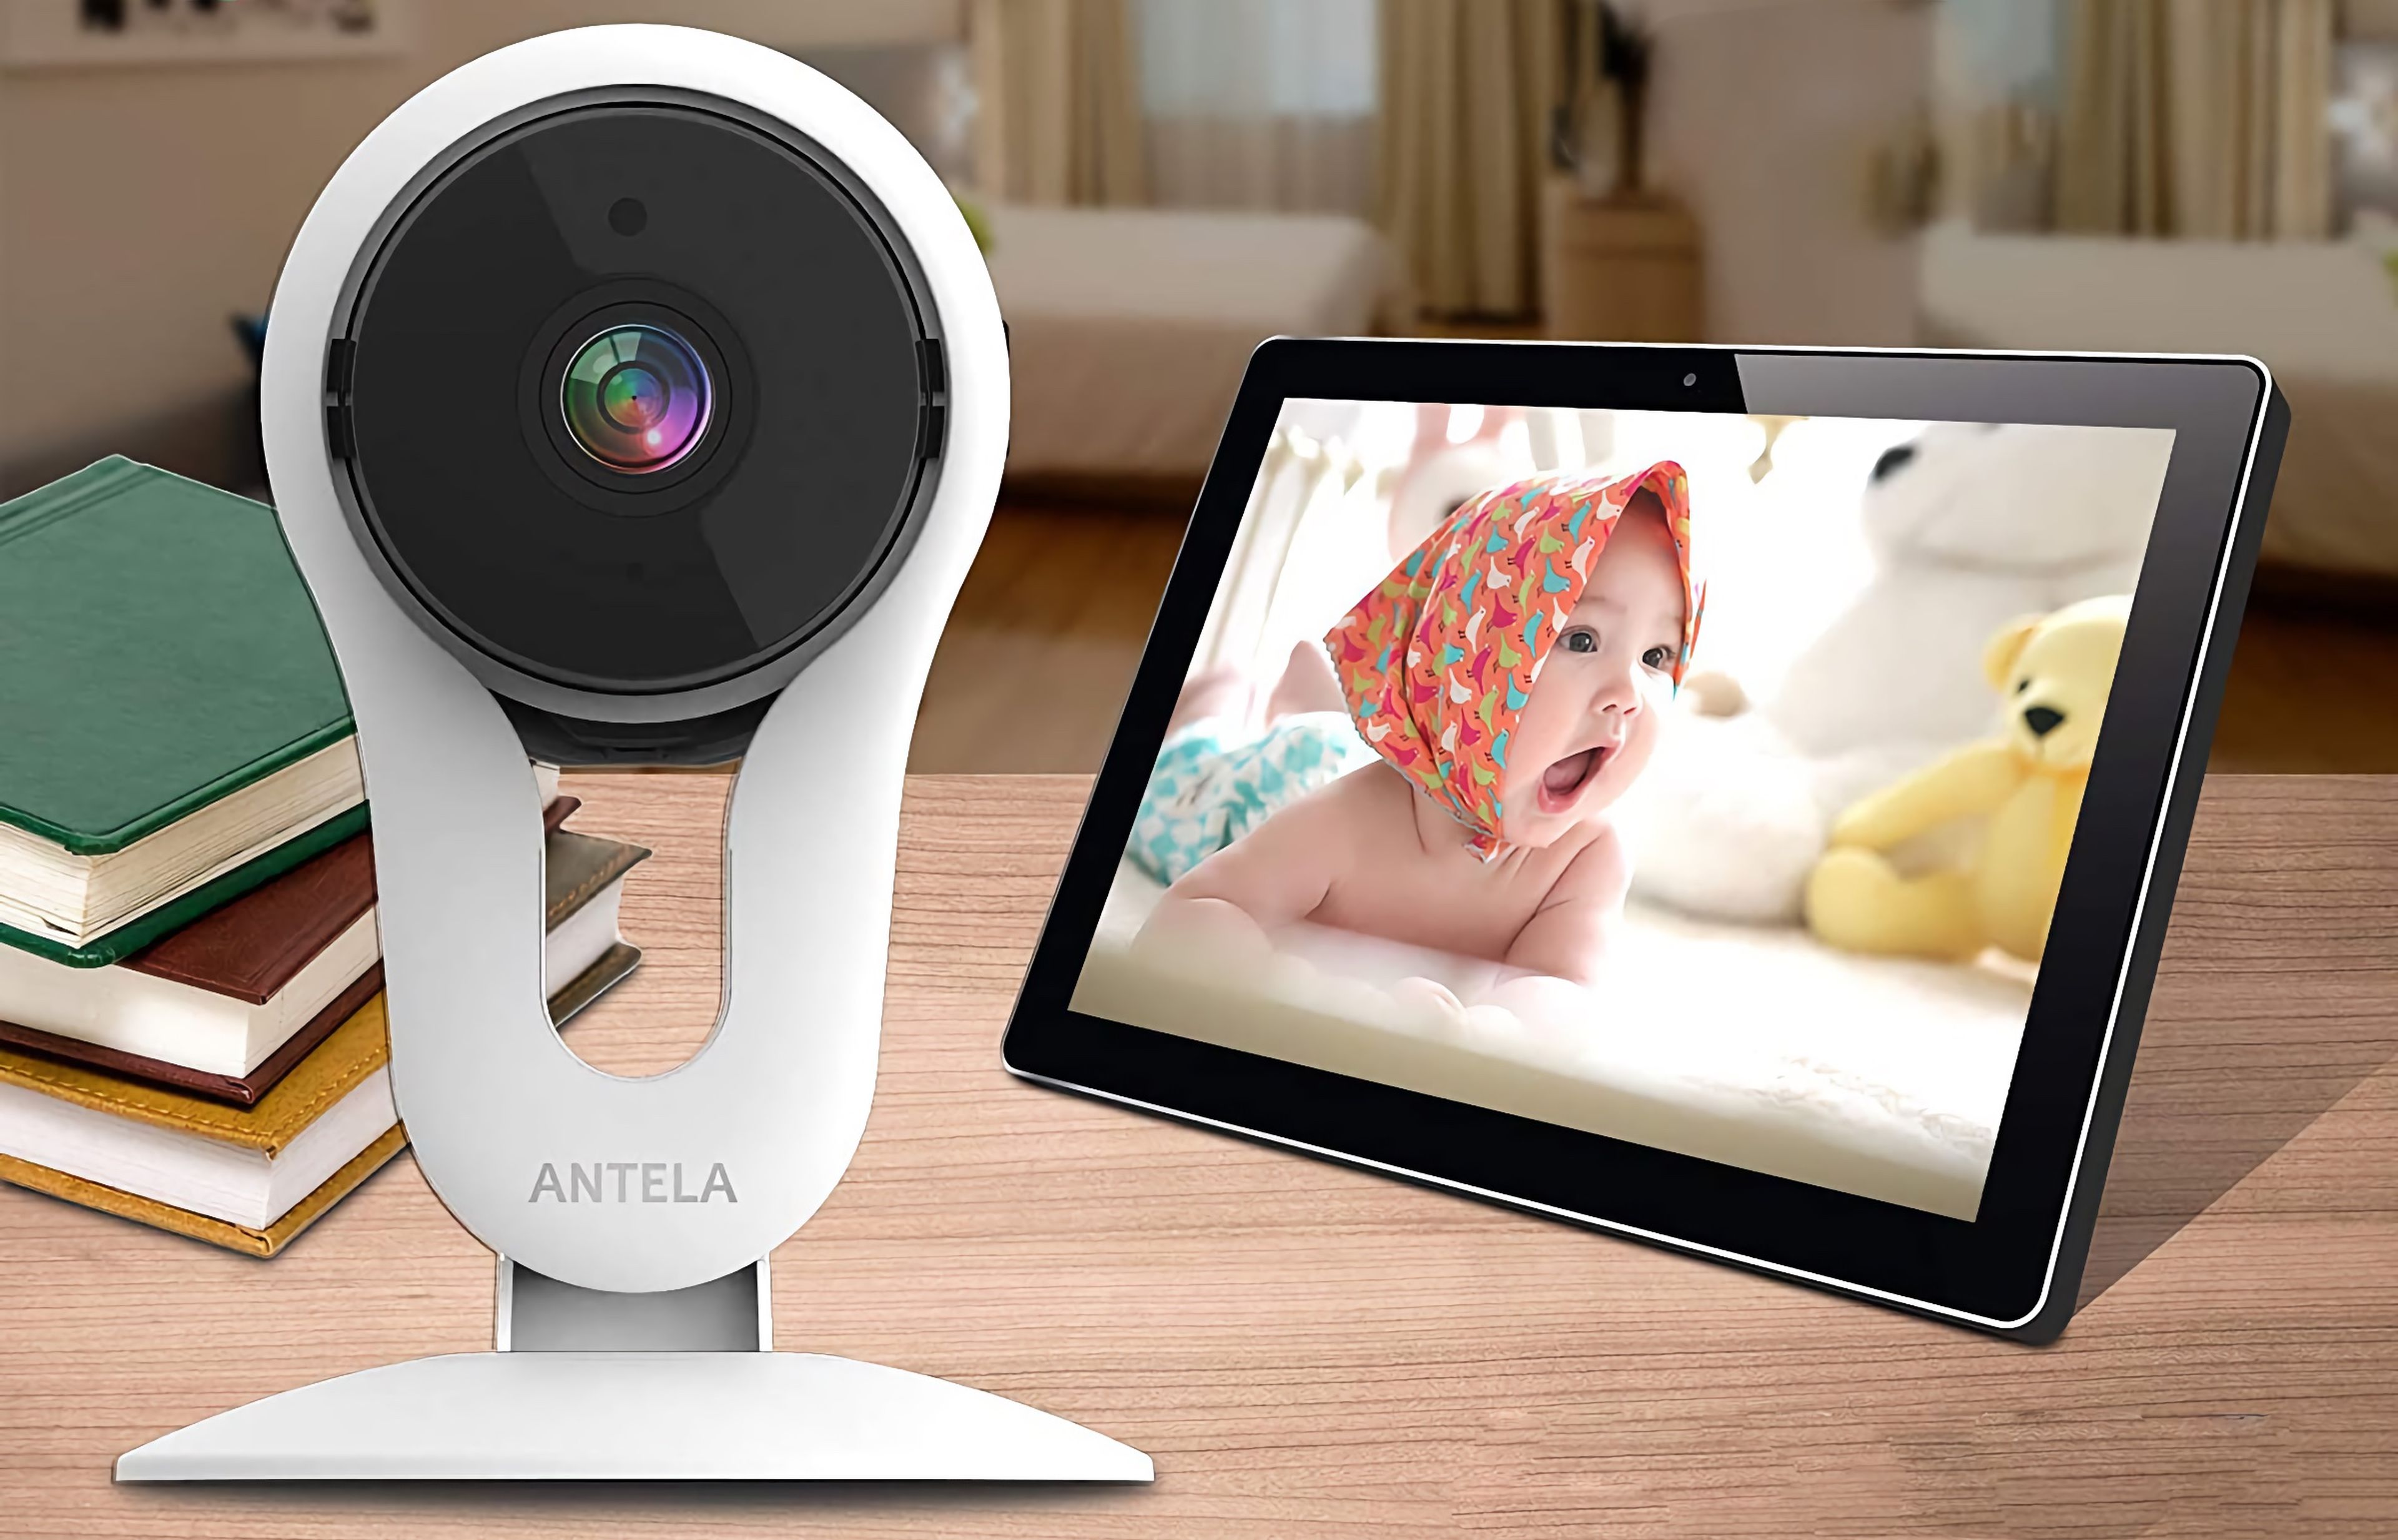 Antela Home Security Camera